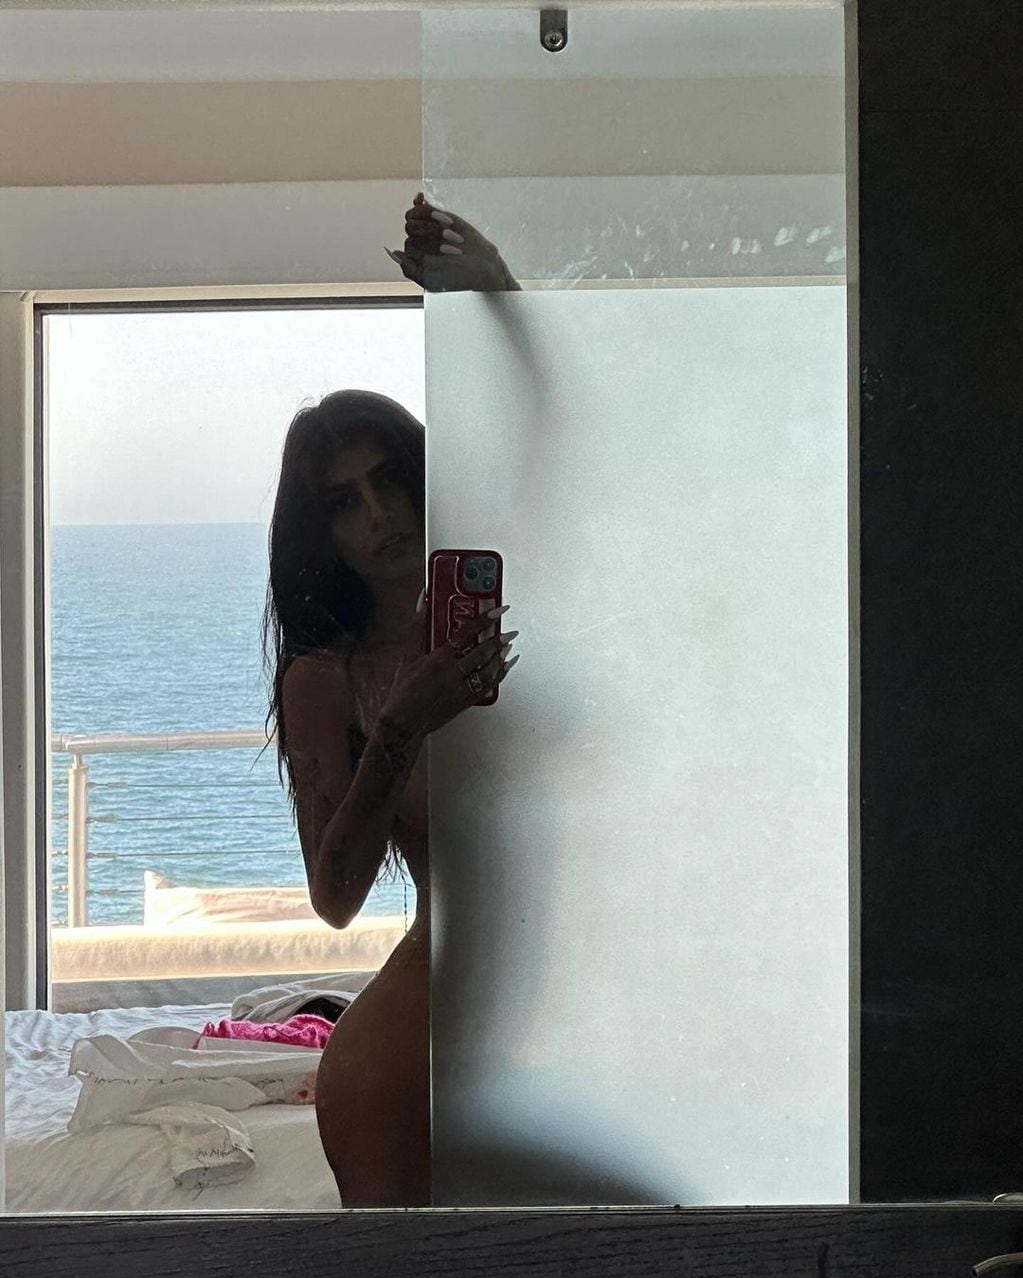 Mia Khalifa encendió Instagram posando al desnudo y mirando a cámara
